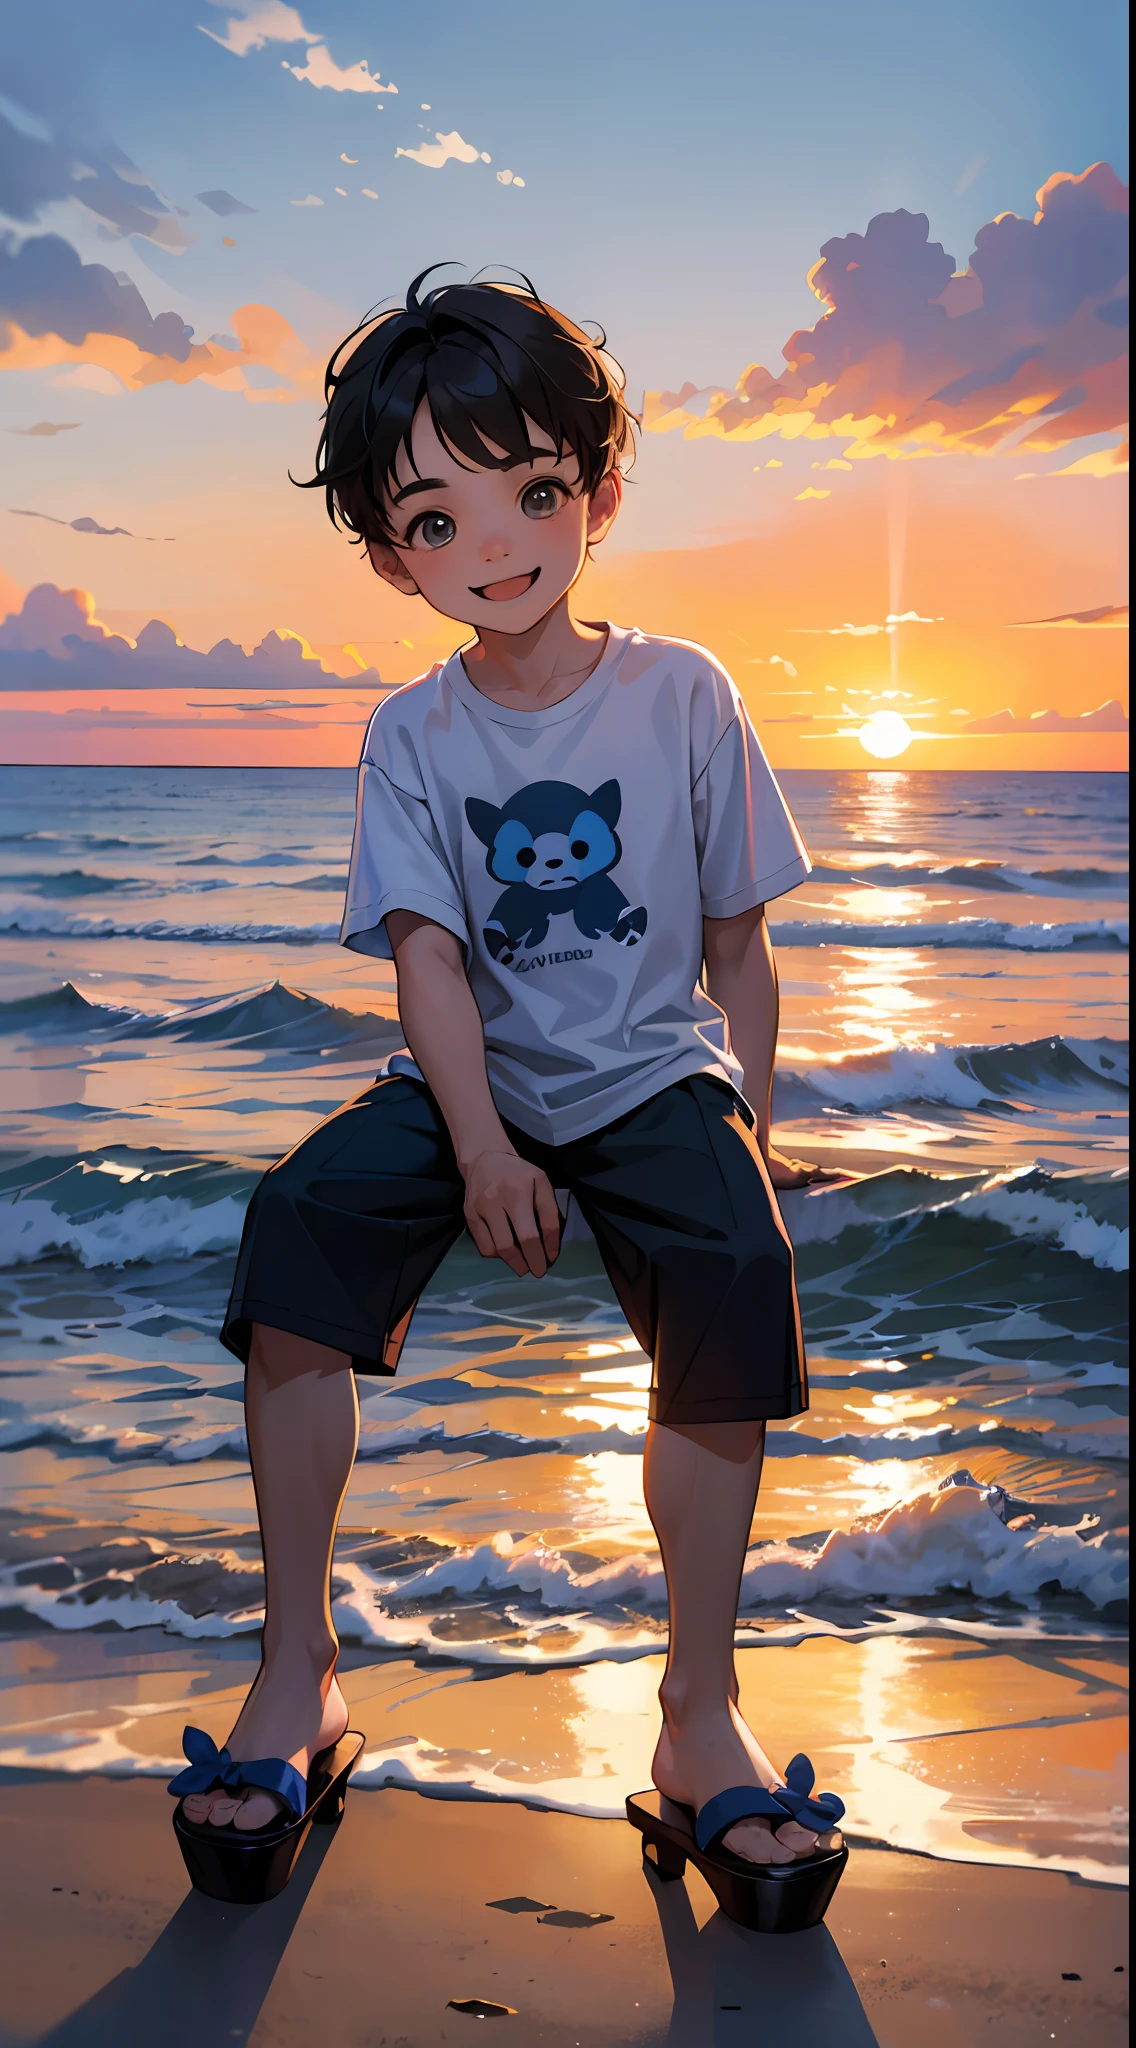 一个快乐的小男孩，穿着休闲服装，穿拖鞋，坐在礁石上，背景是大海，旁边有一只可爱的小狗，日落与日落，面对镜头，全身照片，超高清